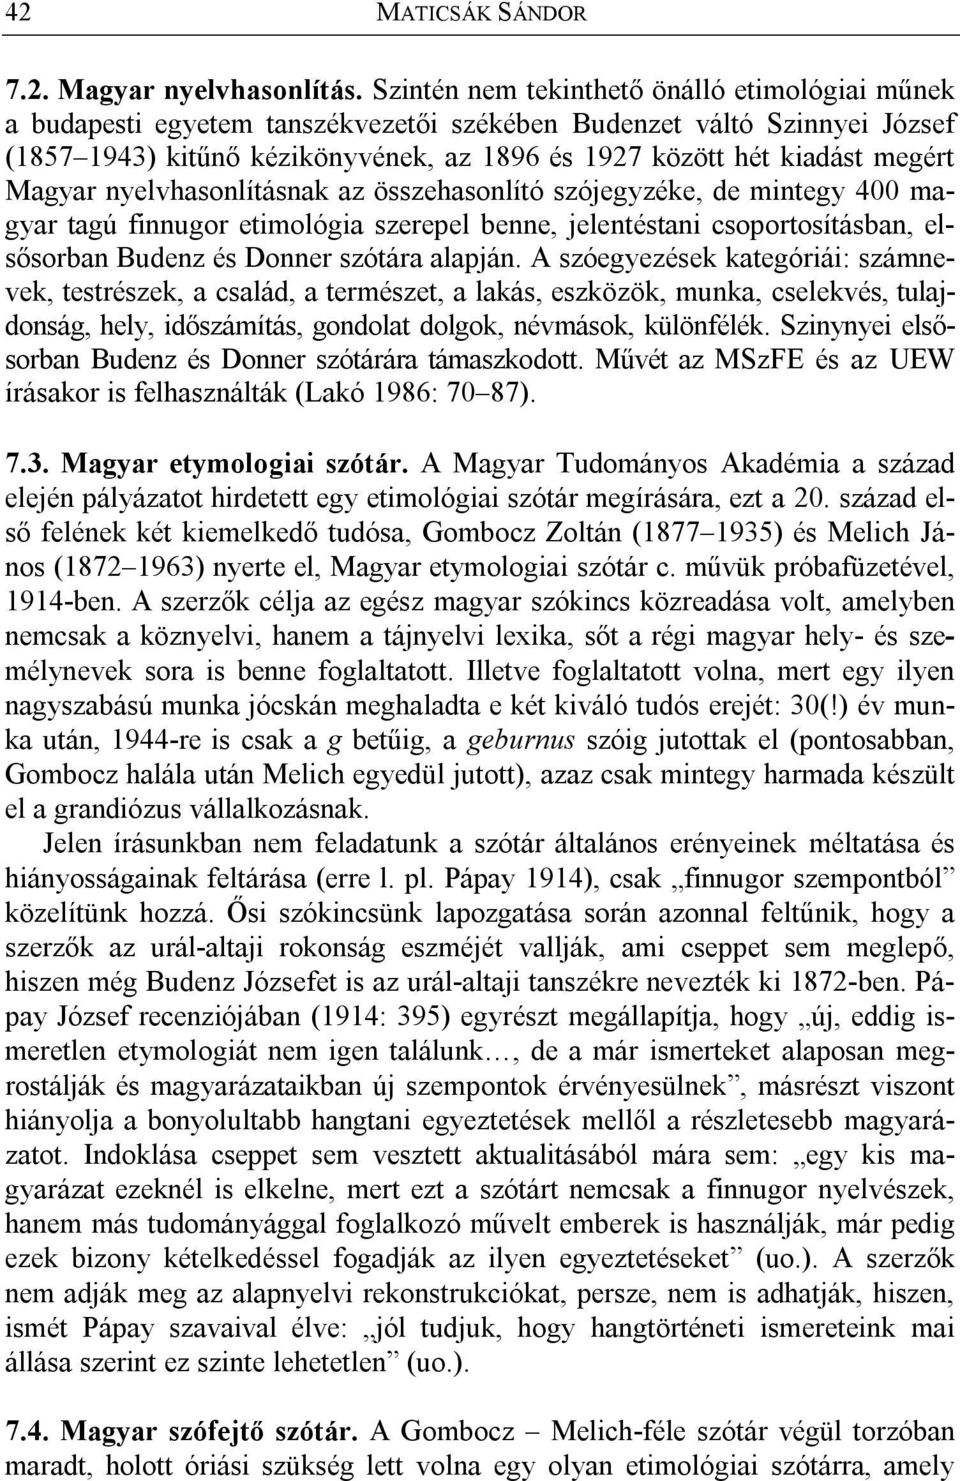 Magyar nyelvhasonlításnak az összehasonlító szójegyzéke, de mintegy 400 magyar tagú finnugor etimológia szerepel benne, jelentéstani csoportosításban, elsősorban Budenz és Donner szótára alapján.